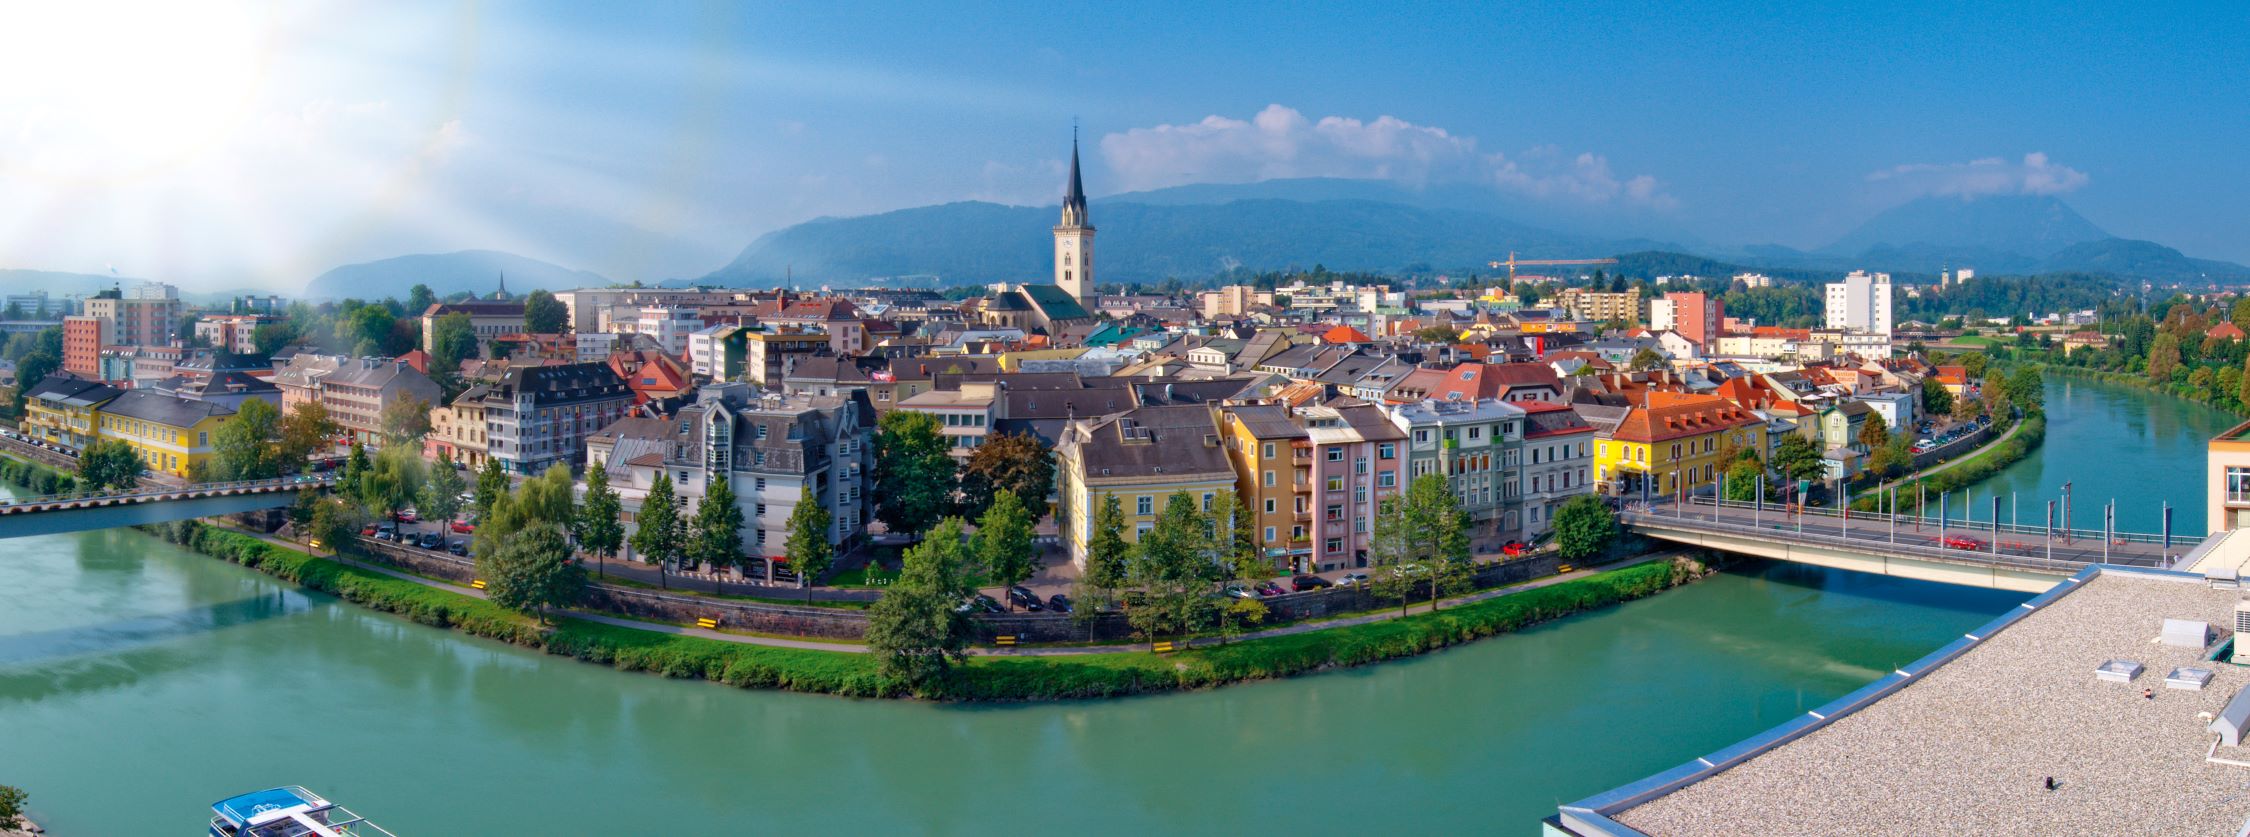 Panorama von der Stadt Villach und dem Fluss Drau